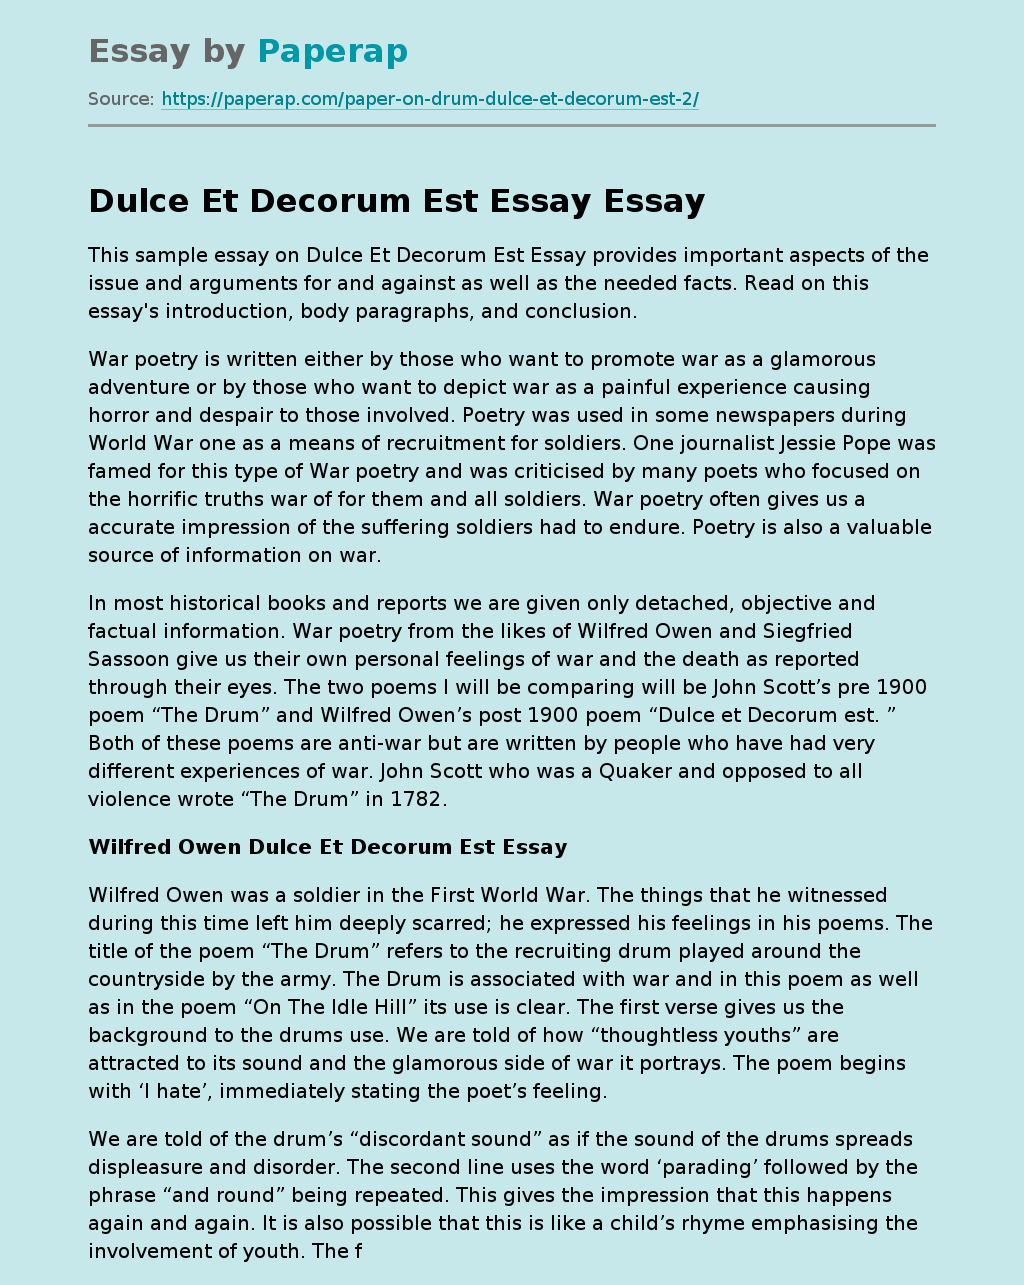 Dulce Et Decorum Est Essay